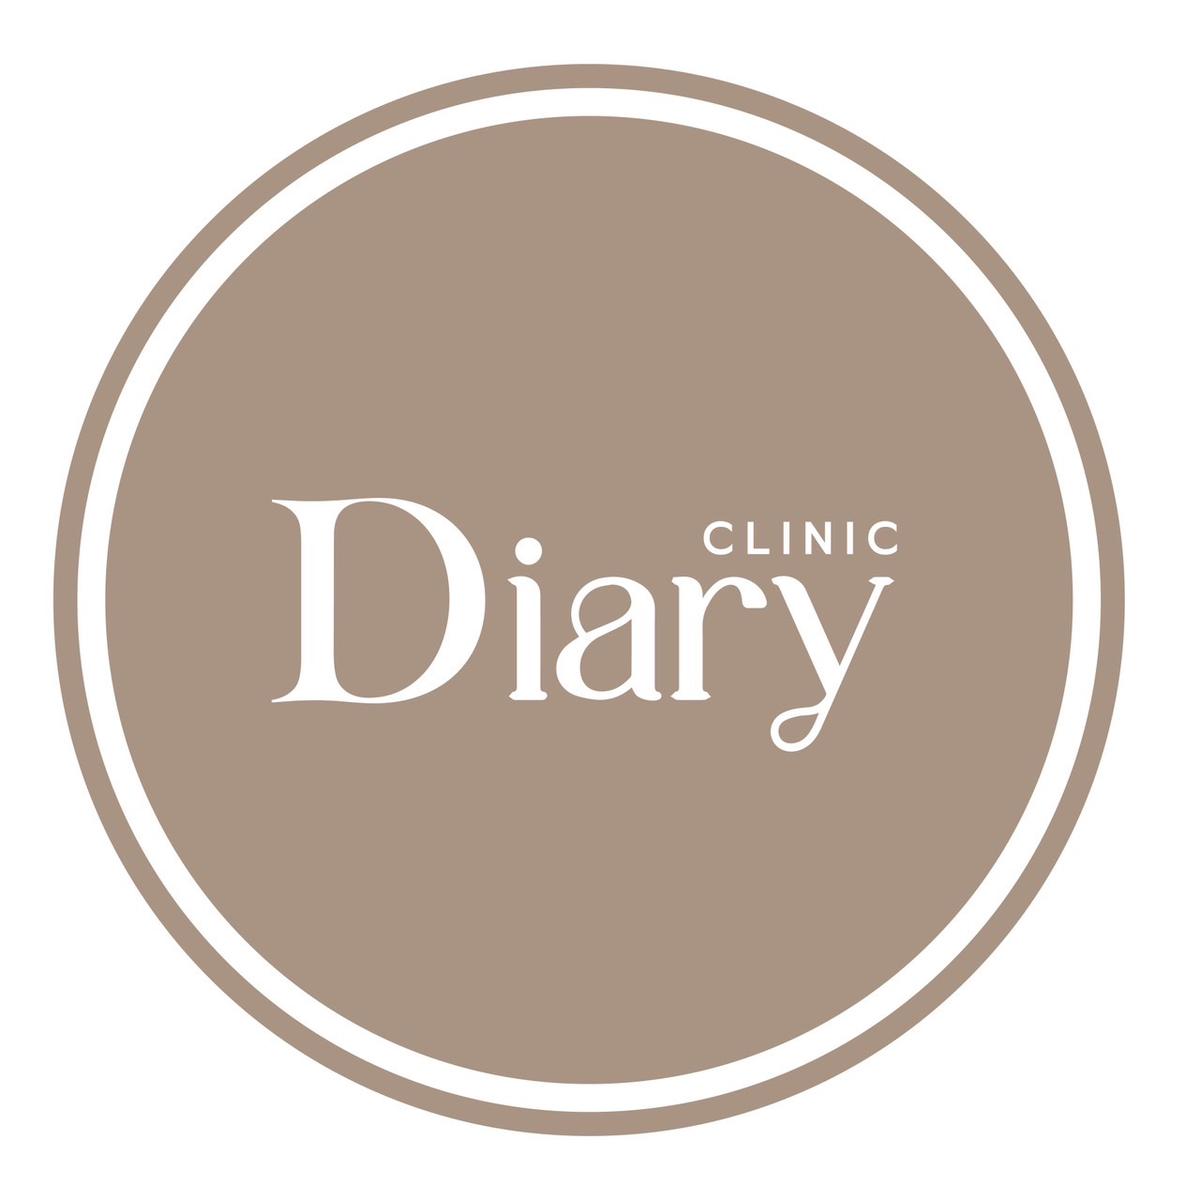 Diary Clinic